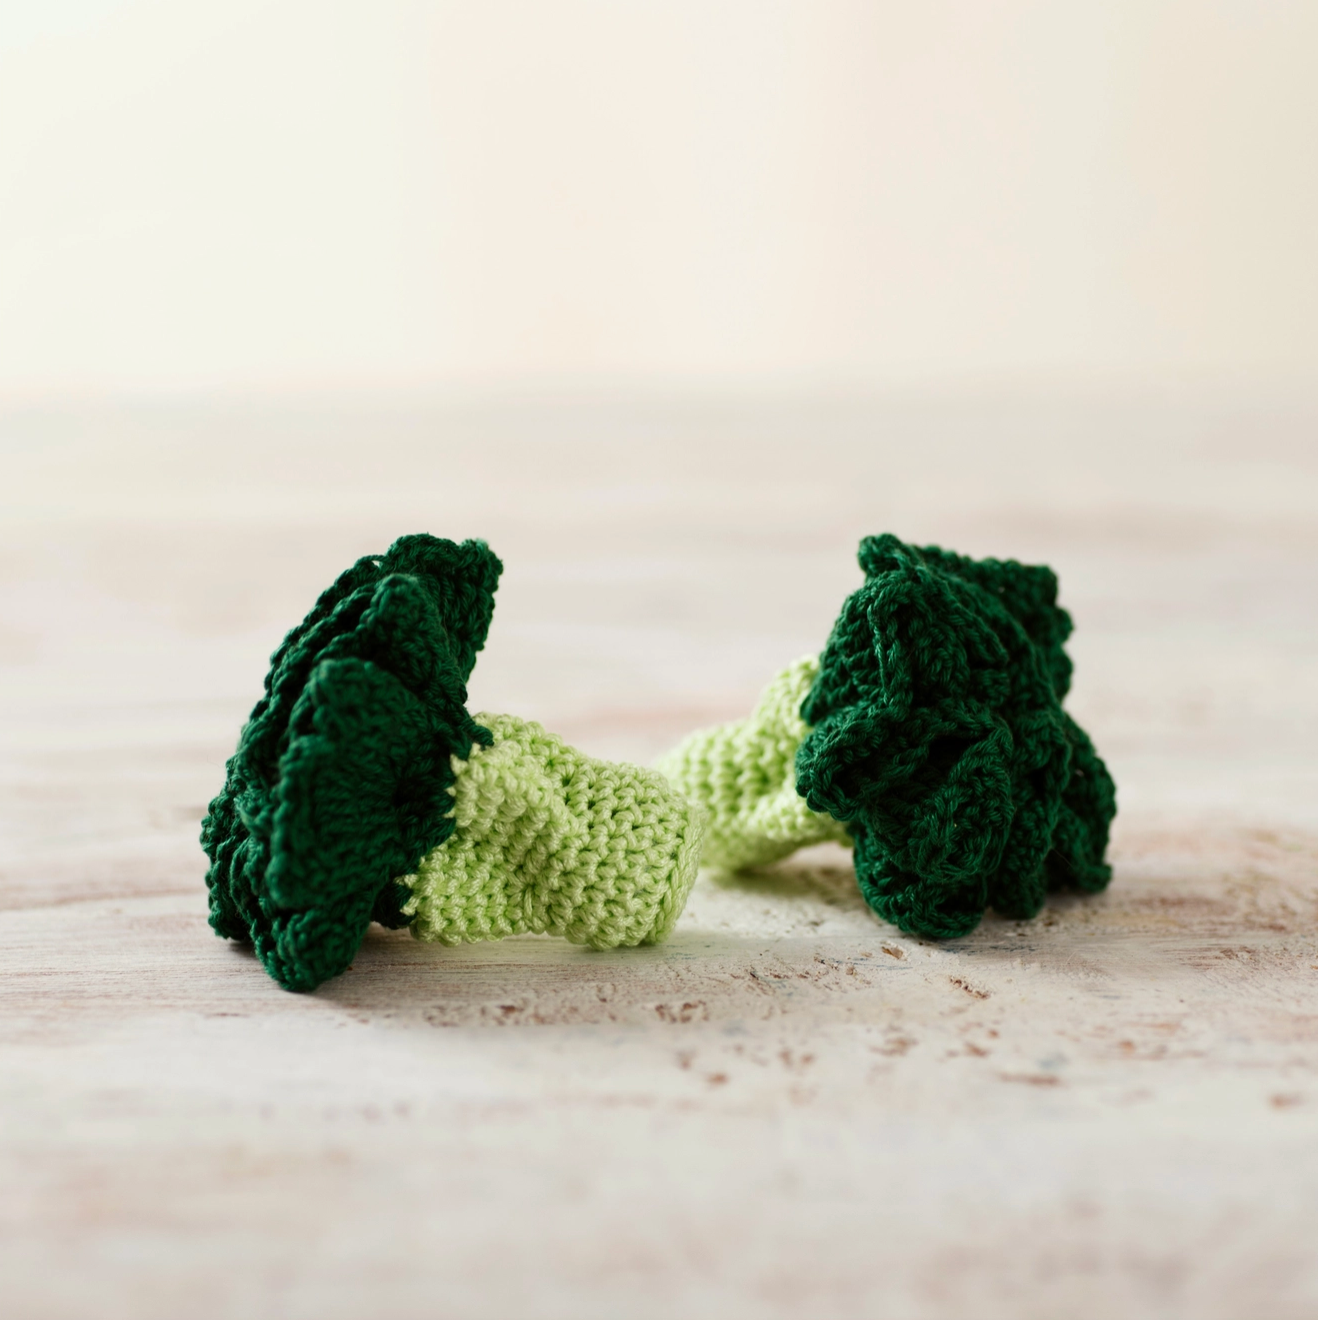 Crochet Play Food: Broccoli